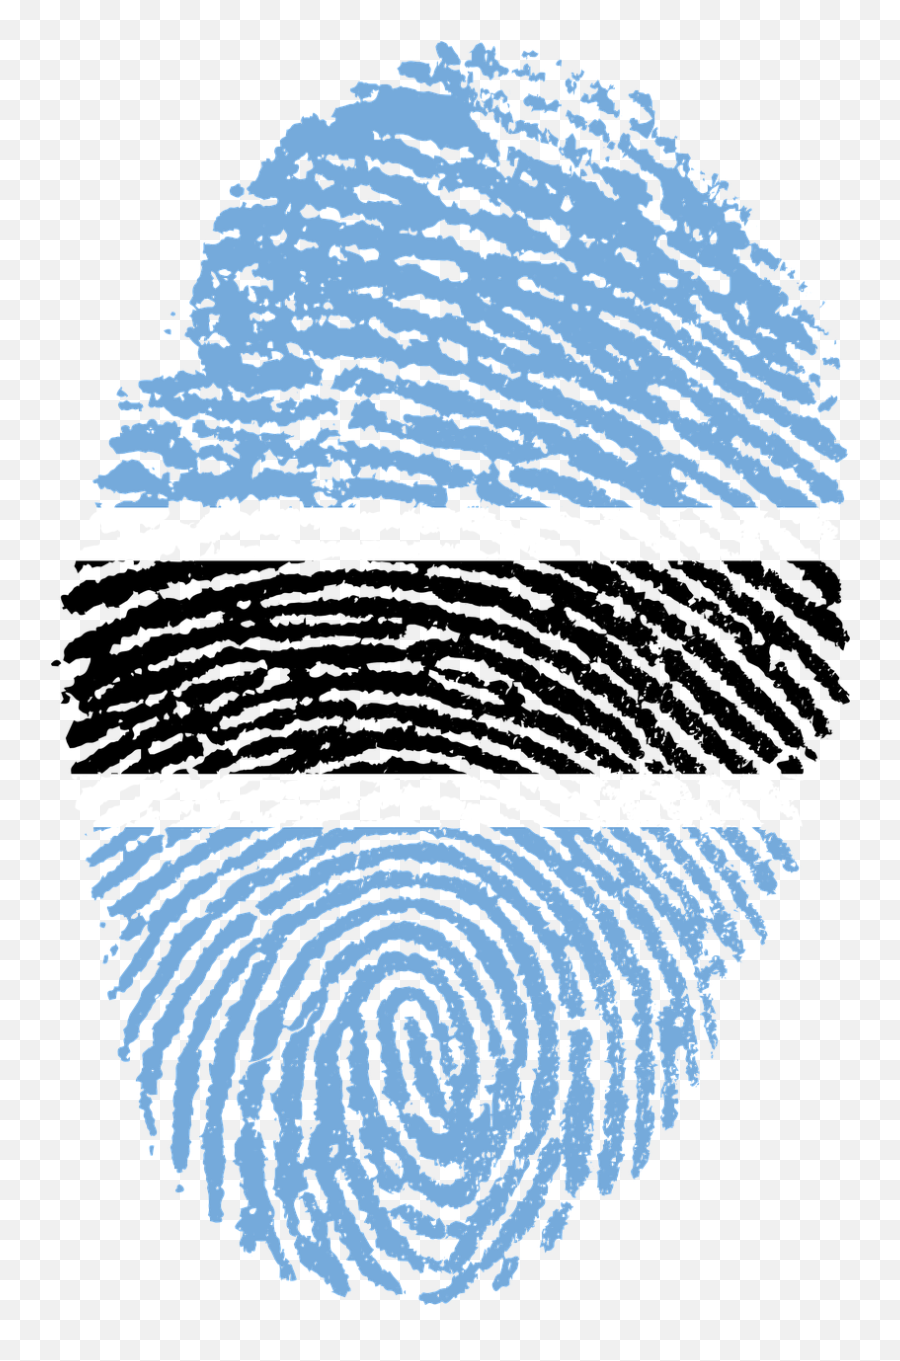 Botswana Flag Fingerprint Transparent - Challenges Of Digital India Png,Fingerprint Transparent